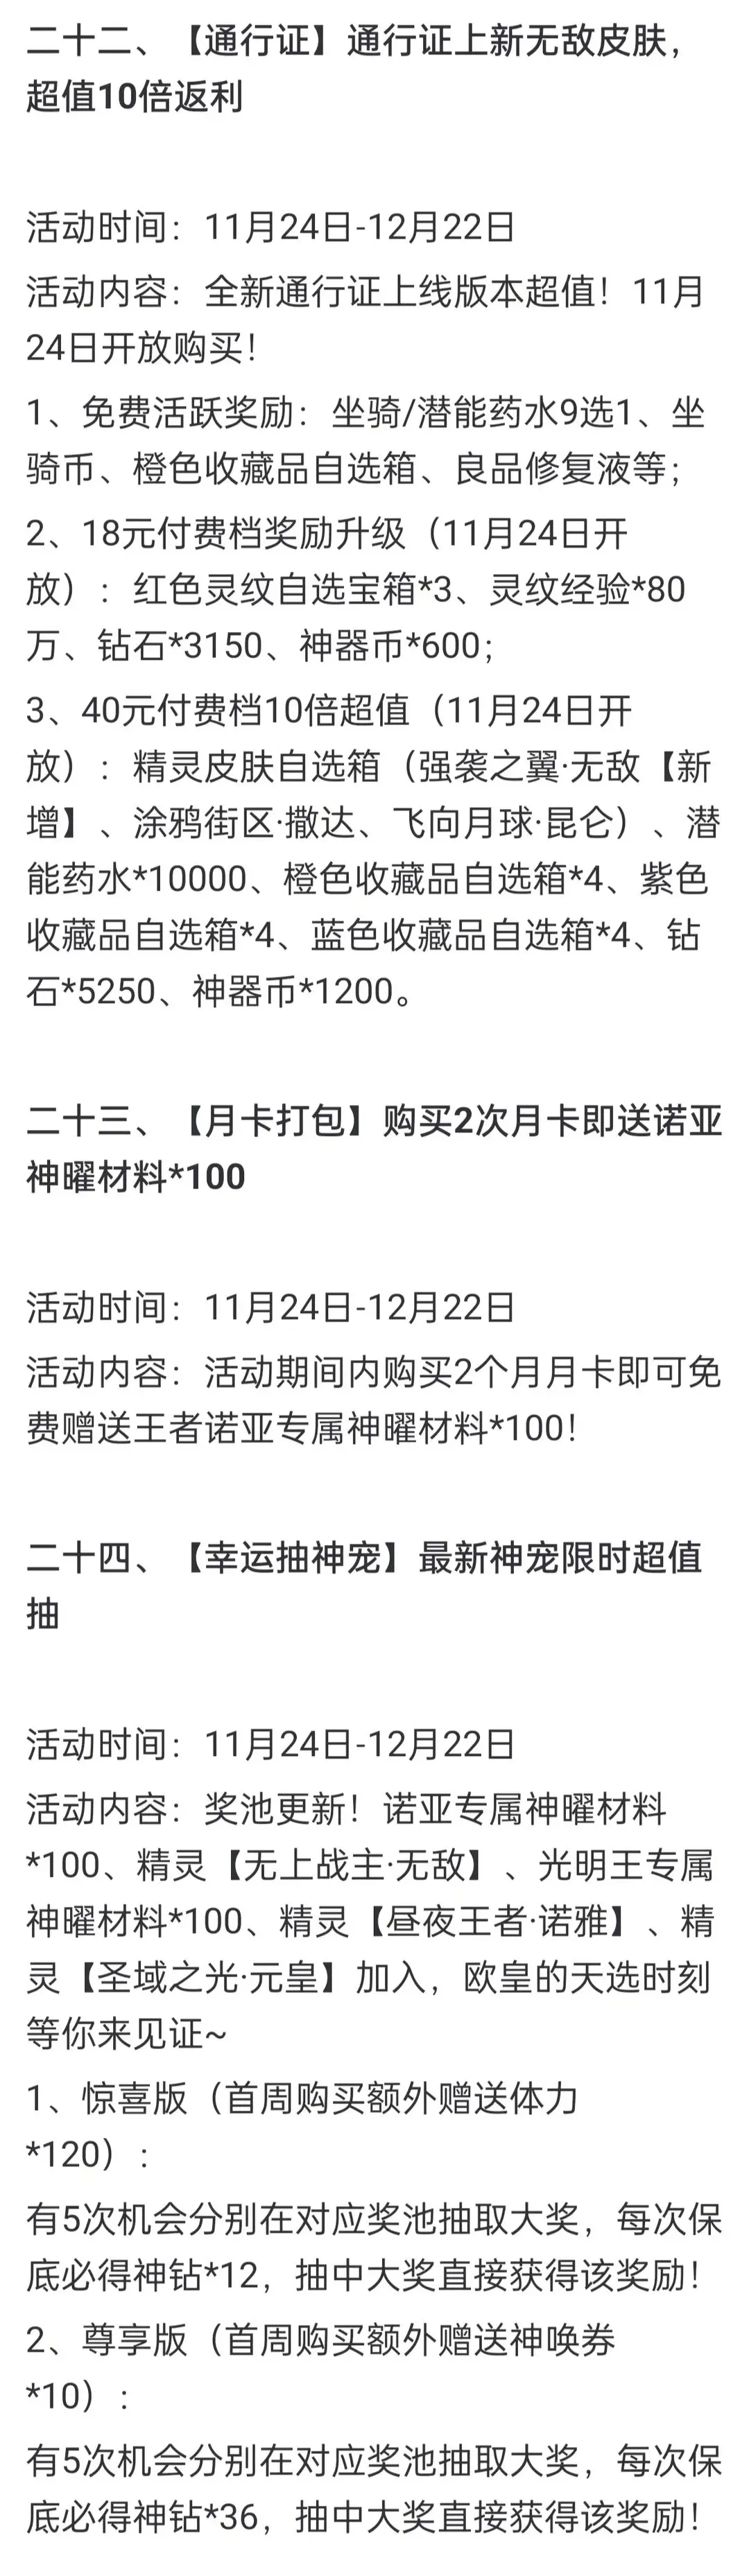 奥奇传说手游更新公告11月24日 奥奇传说手游小诺生日会开启图16